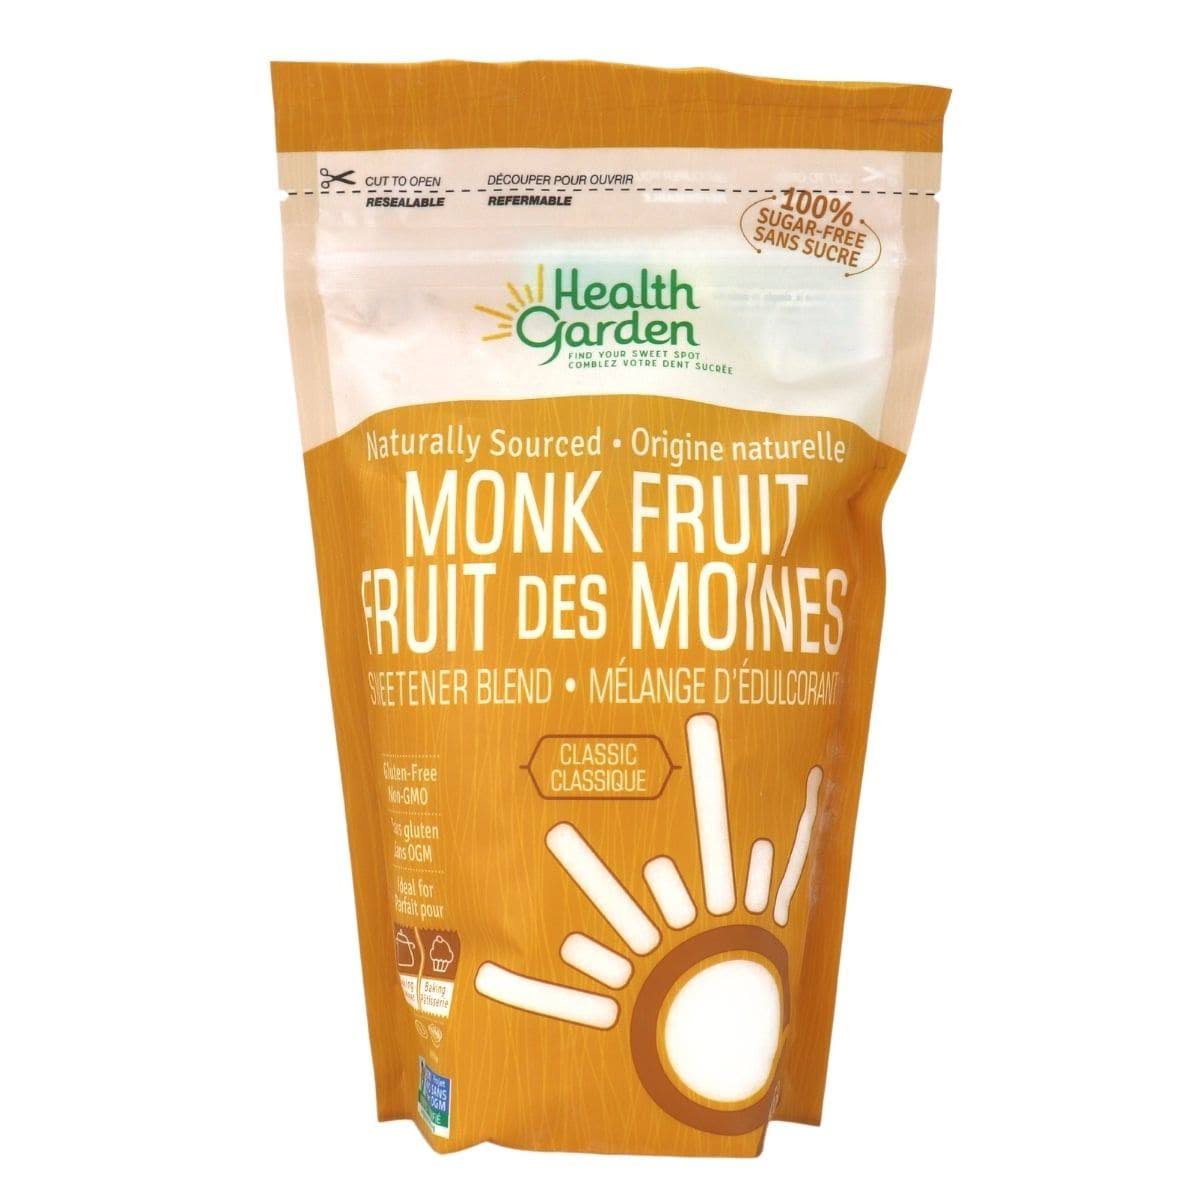 Health Garden - Monk Fruit 1lb